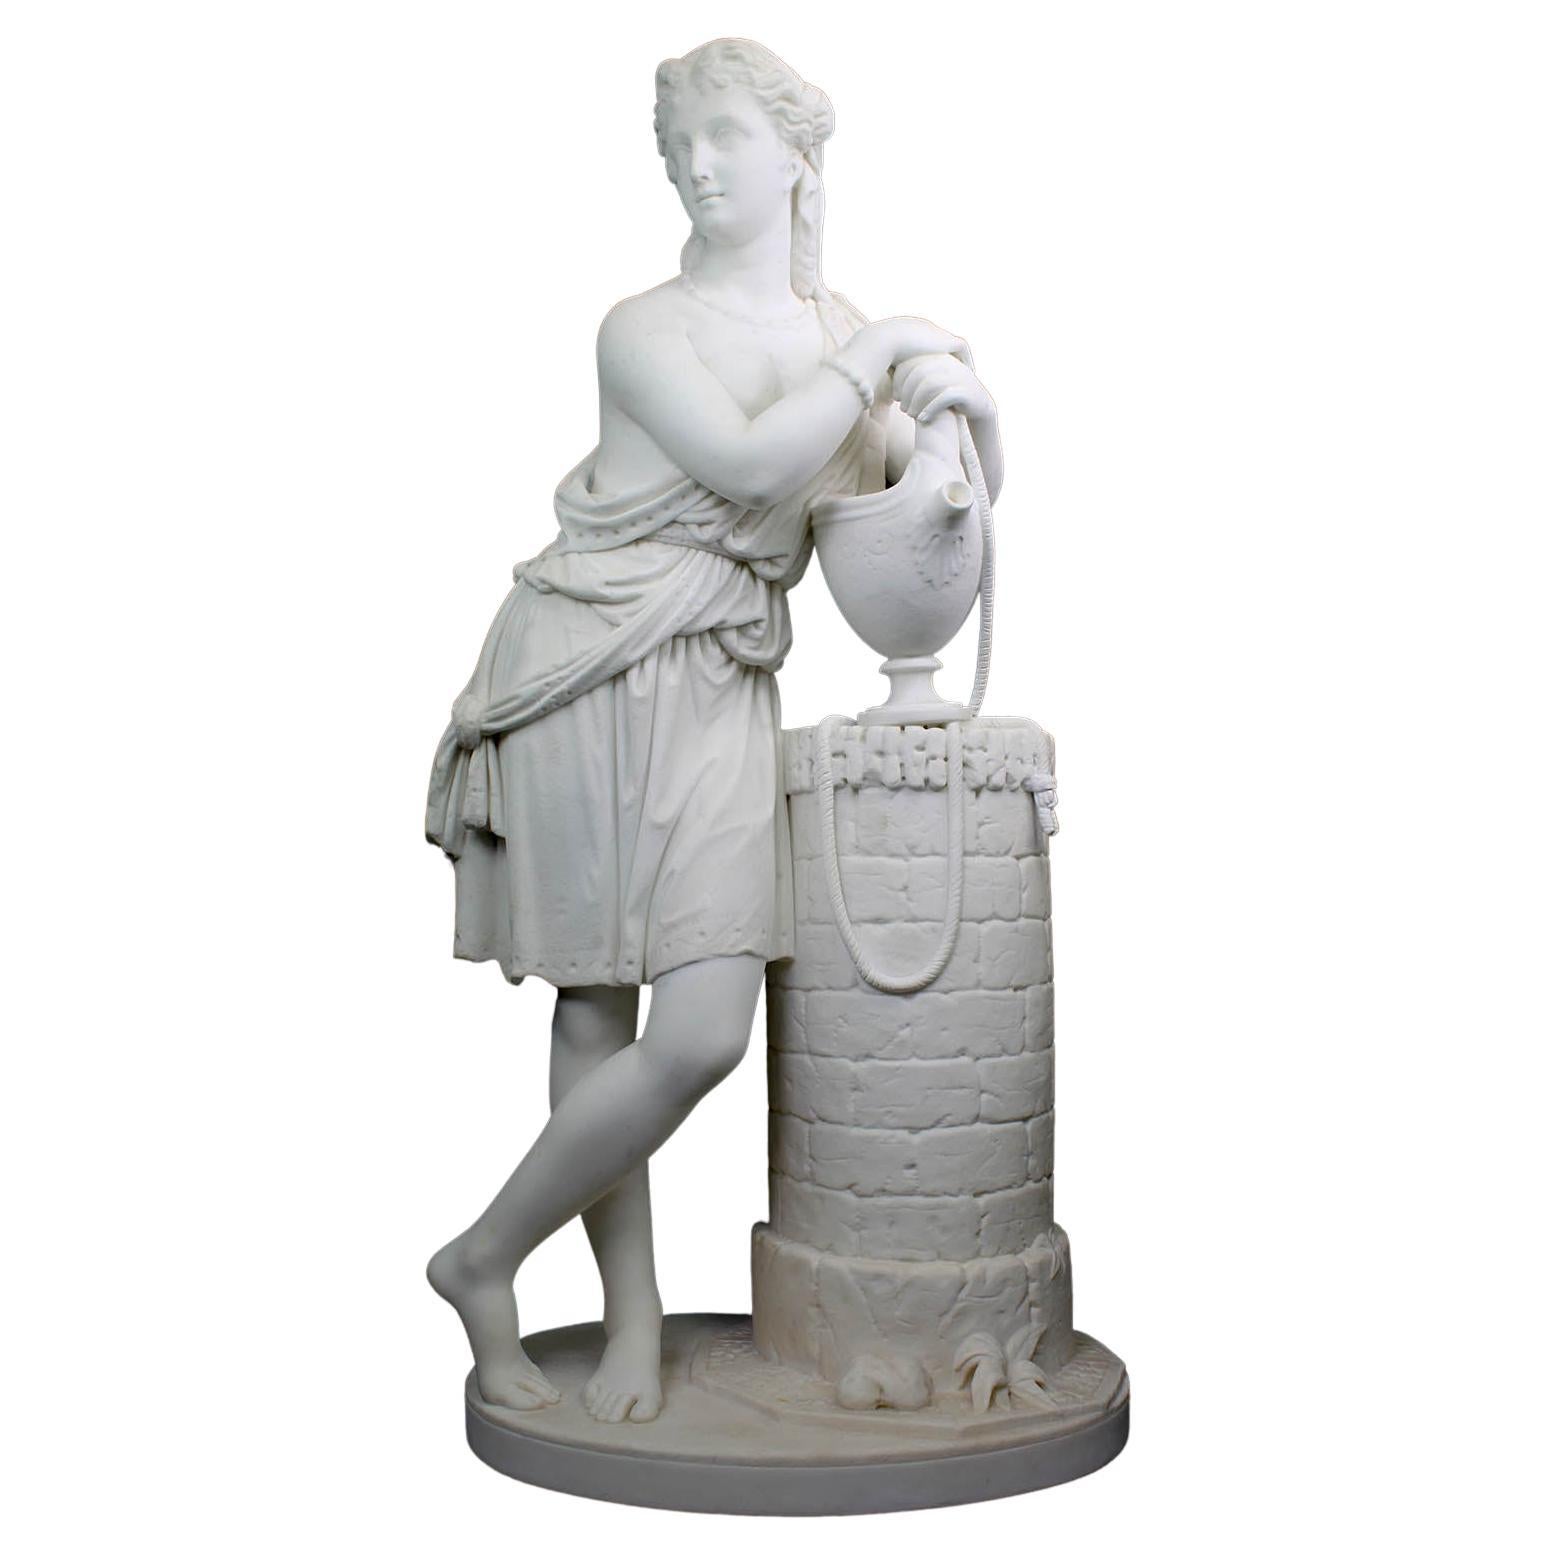 Feine Skulptur von Rebecca aus weißem Marmor aus dem 19. Jahrhundert im Brunnen